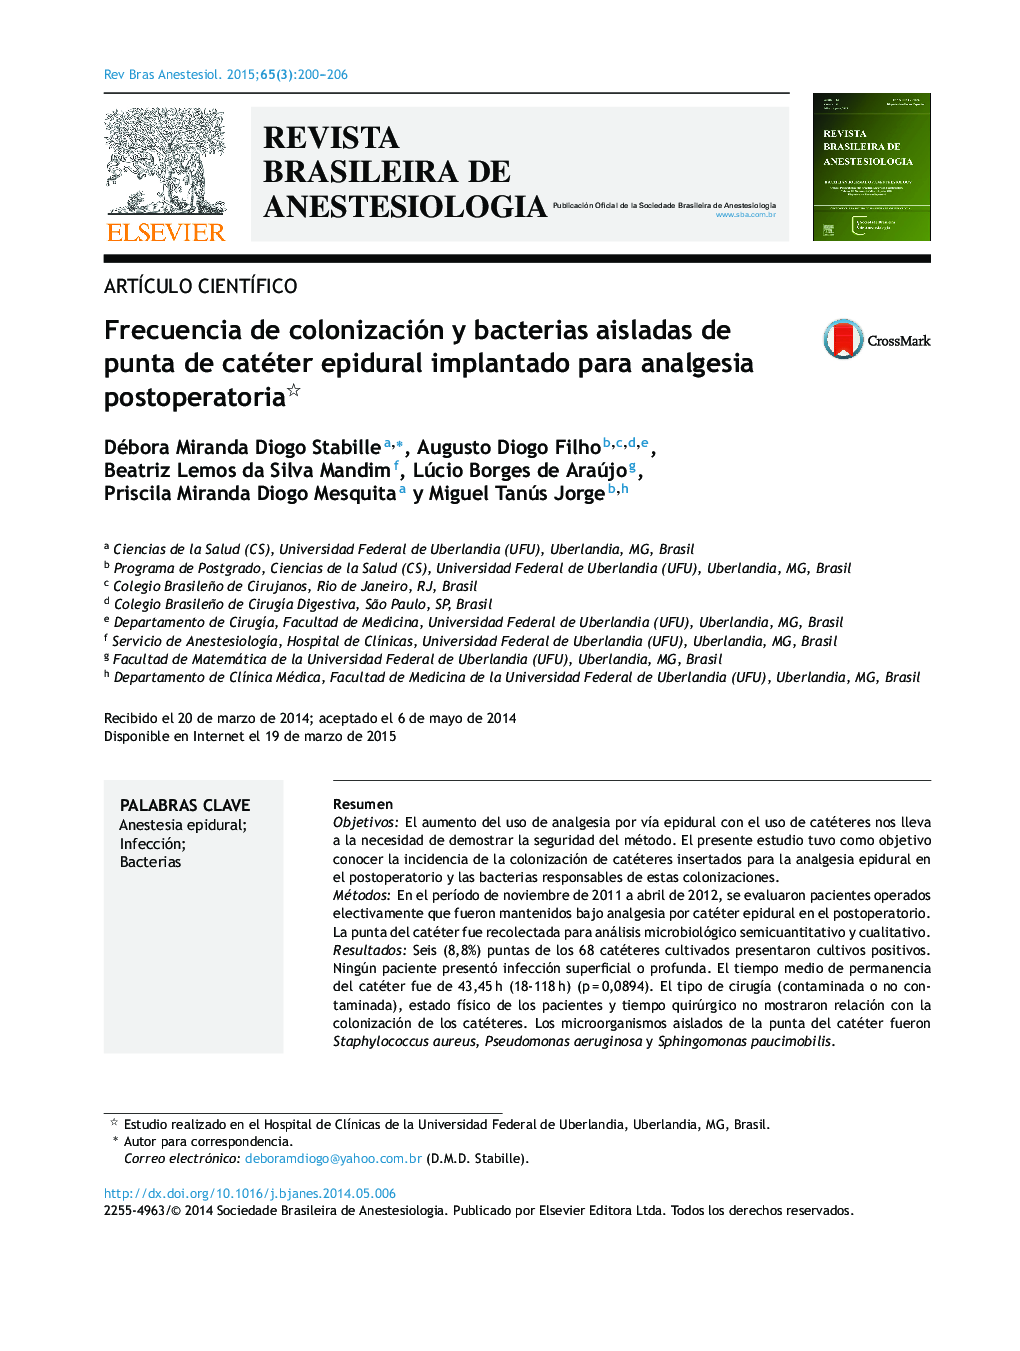 Frecuencia de colonización y bacterias aisladas de punta de catéter epidural implantado para analgesia postoperatoria 